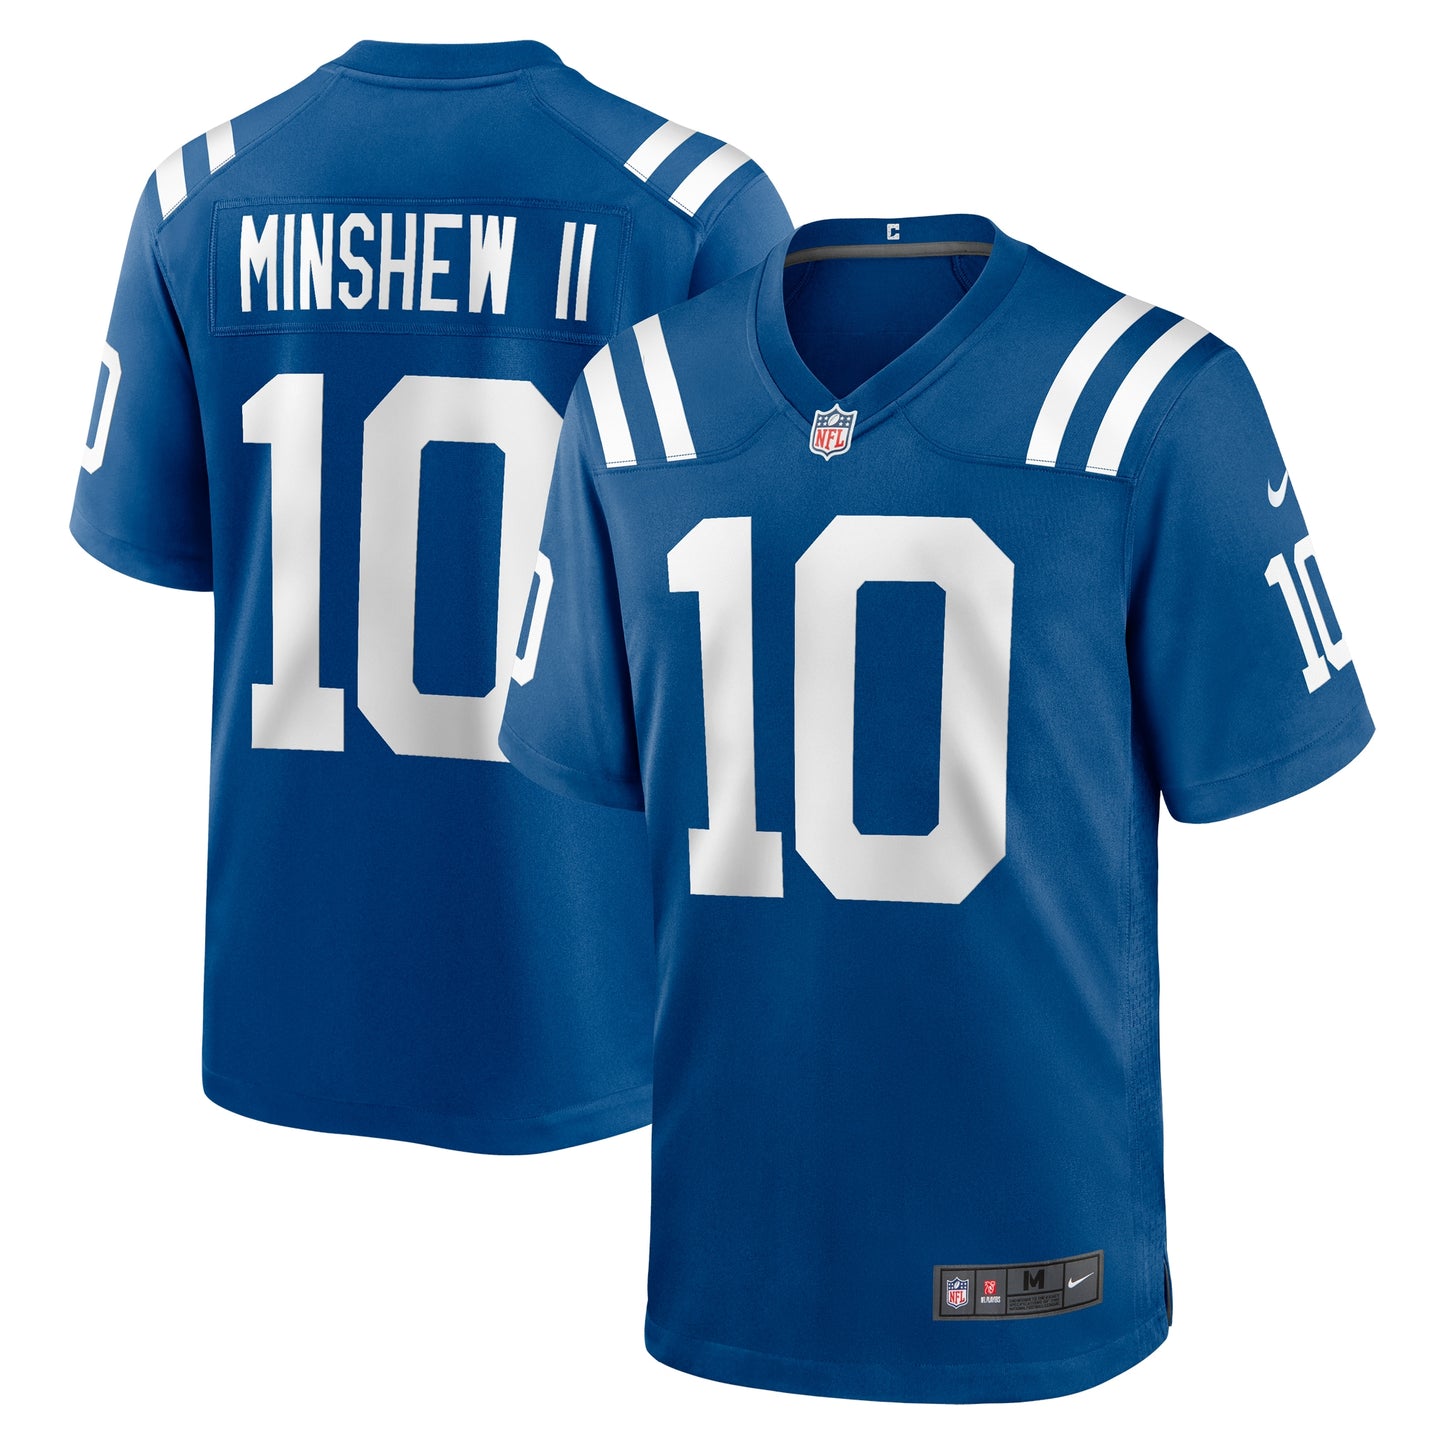 Gardner Minshew II Indianapolis Colts Nike Game Jersey - Royal